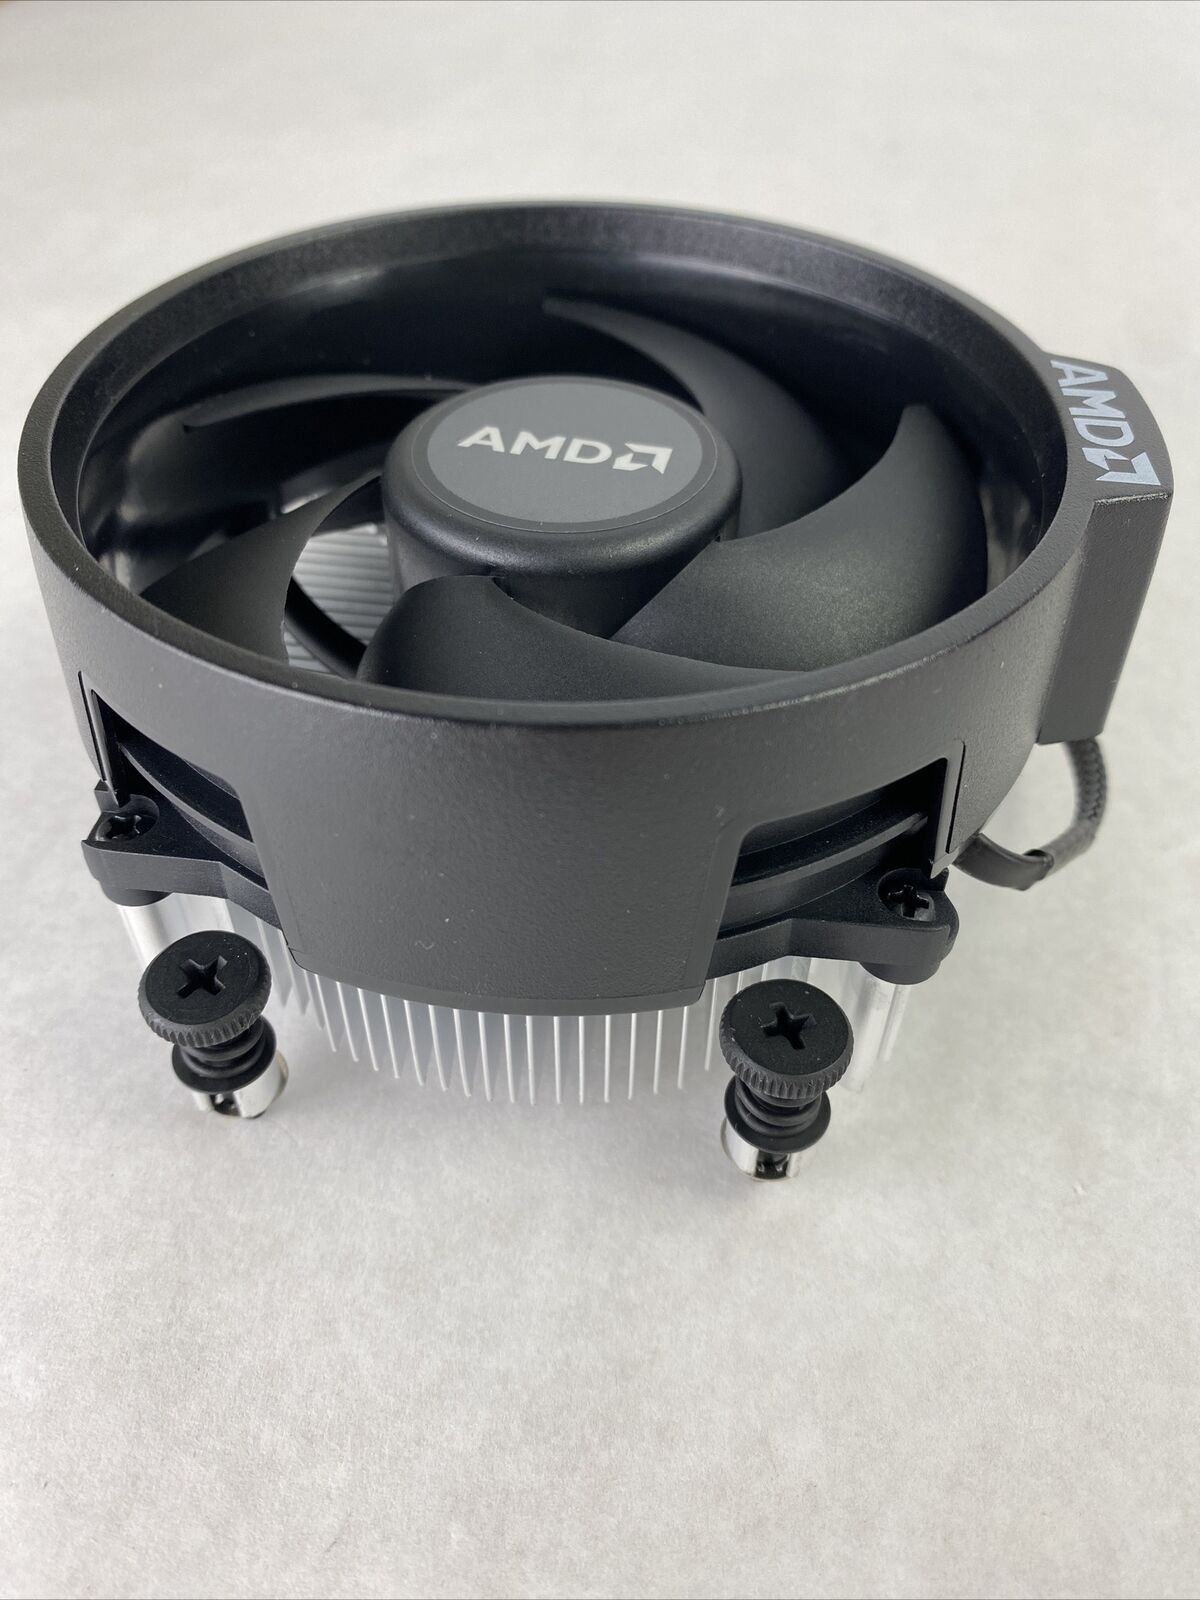 AMD 712-xxx052 Wraith Stealth Cooler Ryzen 5 2600 Cooling Fan + Heatsink + Badge